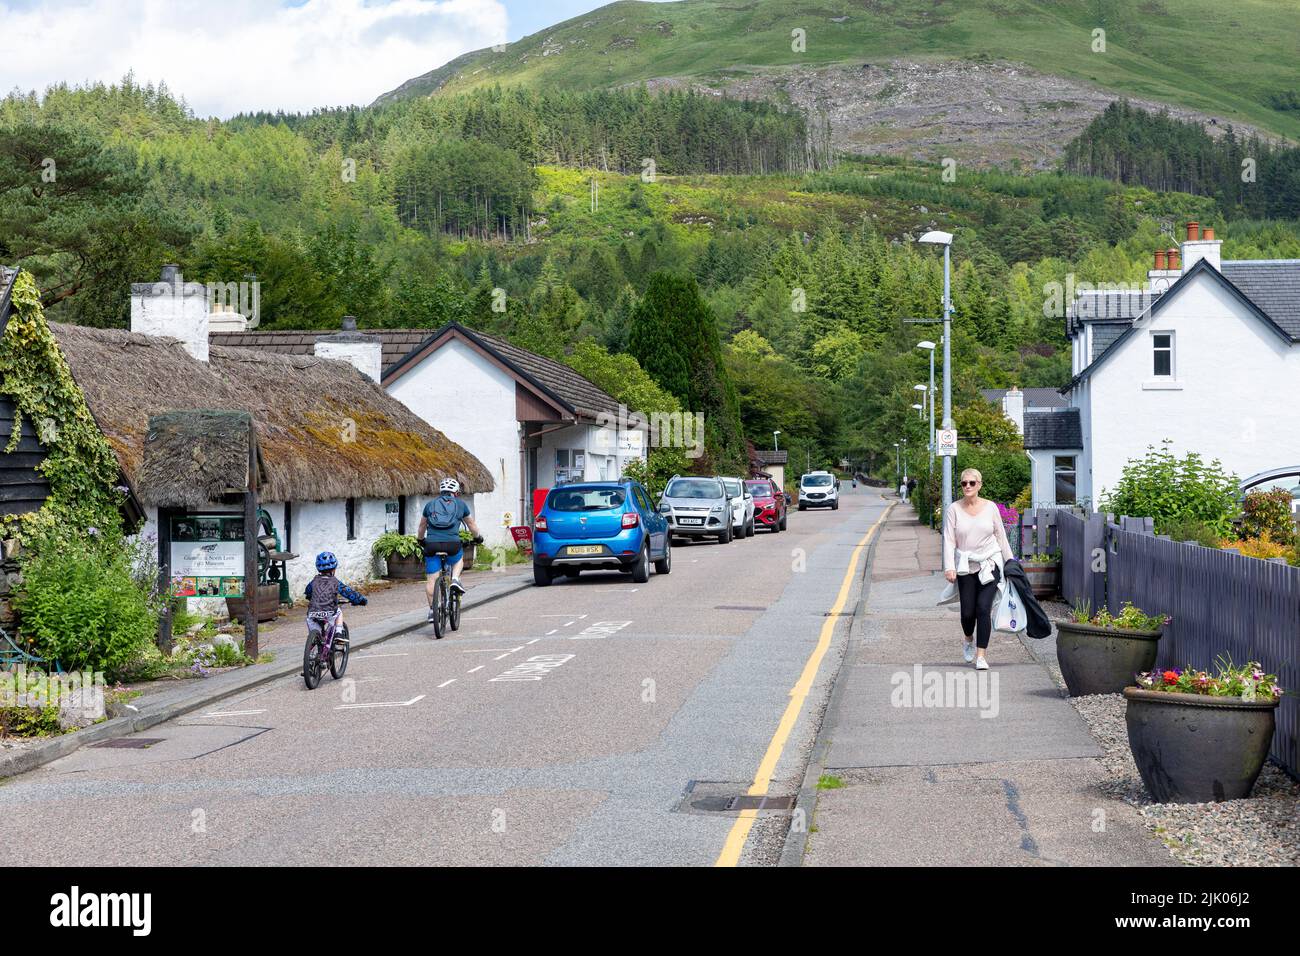 Glencoe villaggio con negozi e case, Highlands scozzesi, Scozia in una giornata estiva, padre e figlio in bicicletta, Regno Unito Foto Stock